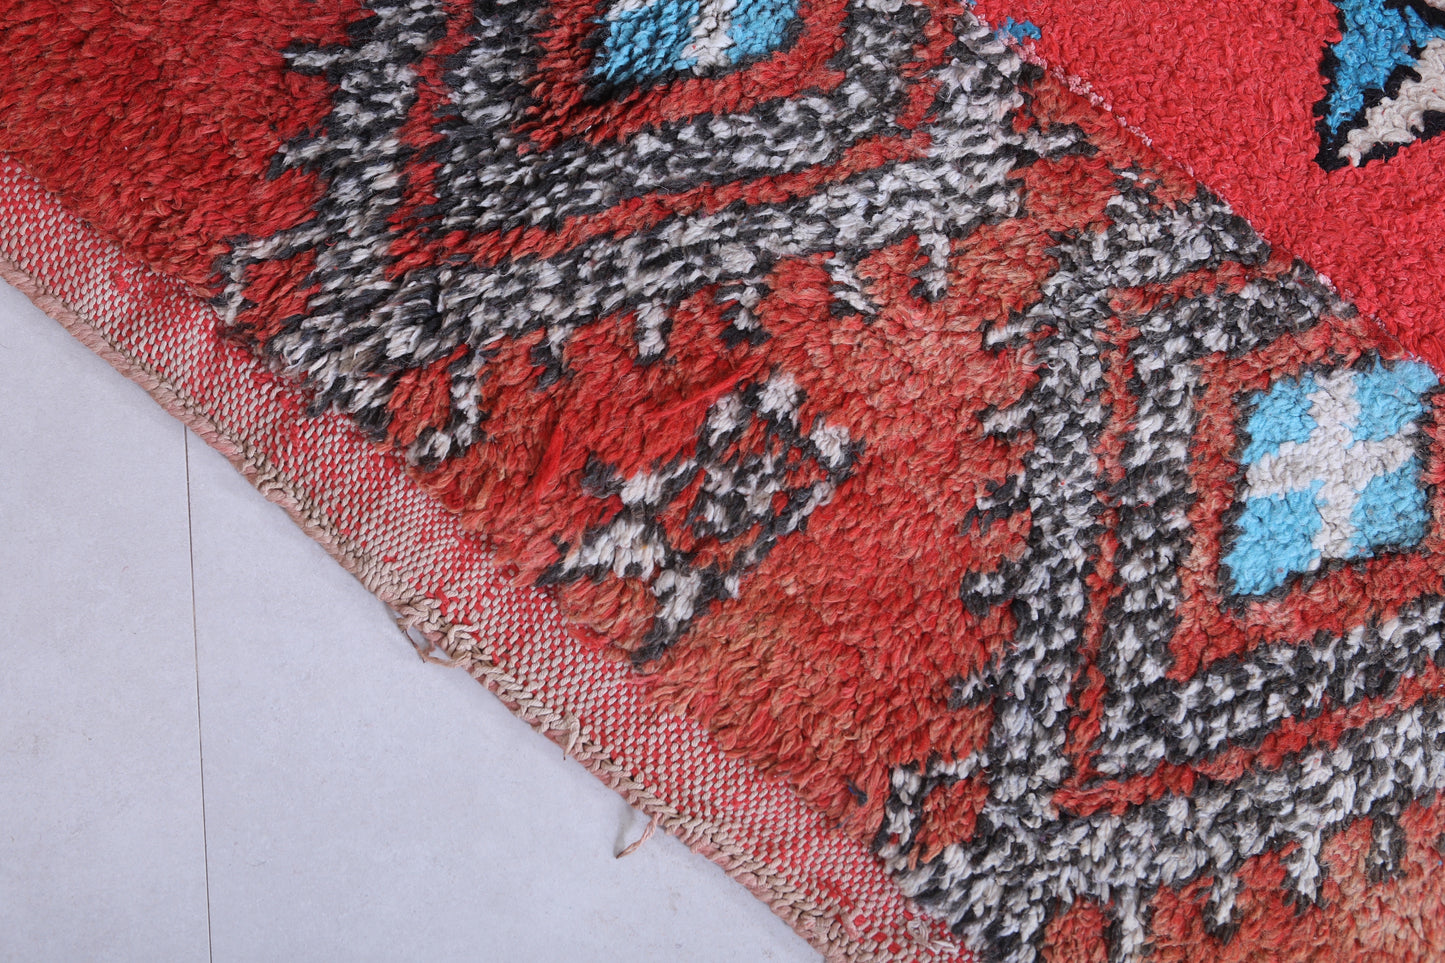 Moroccan rug 5.2 X 7.3 Feet